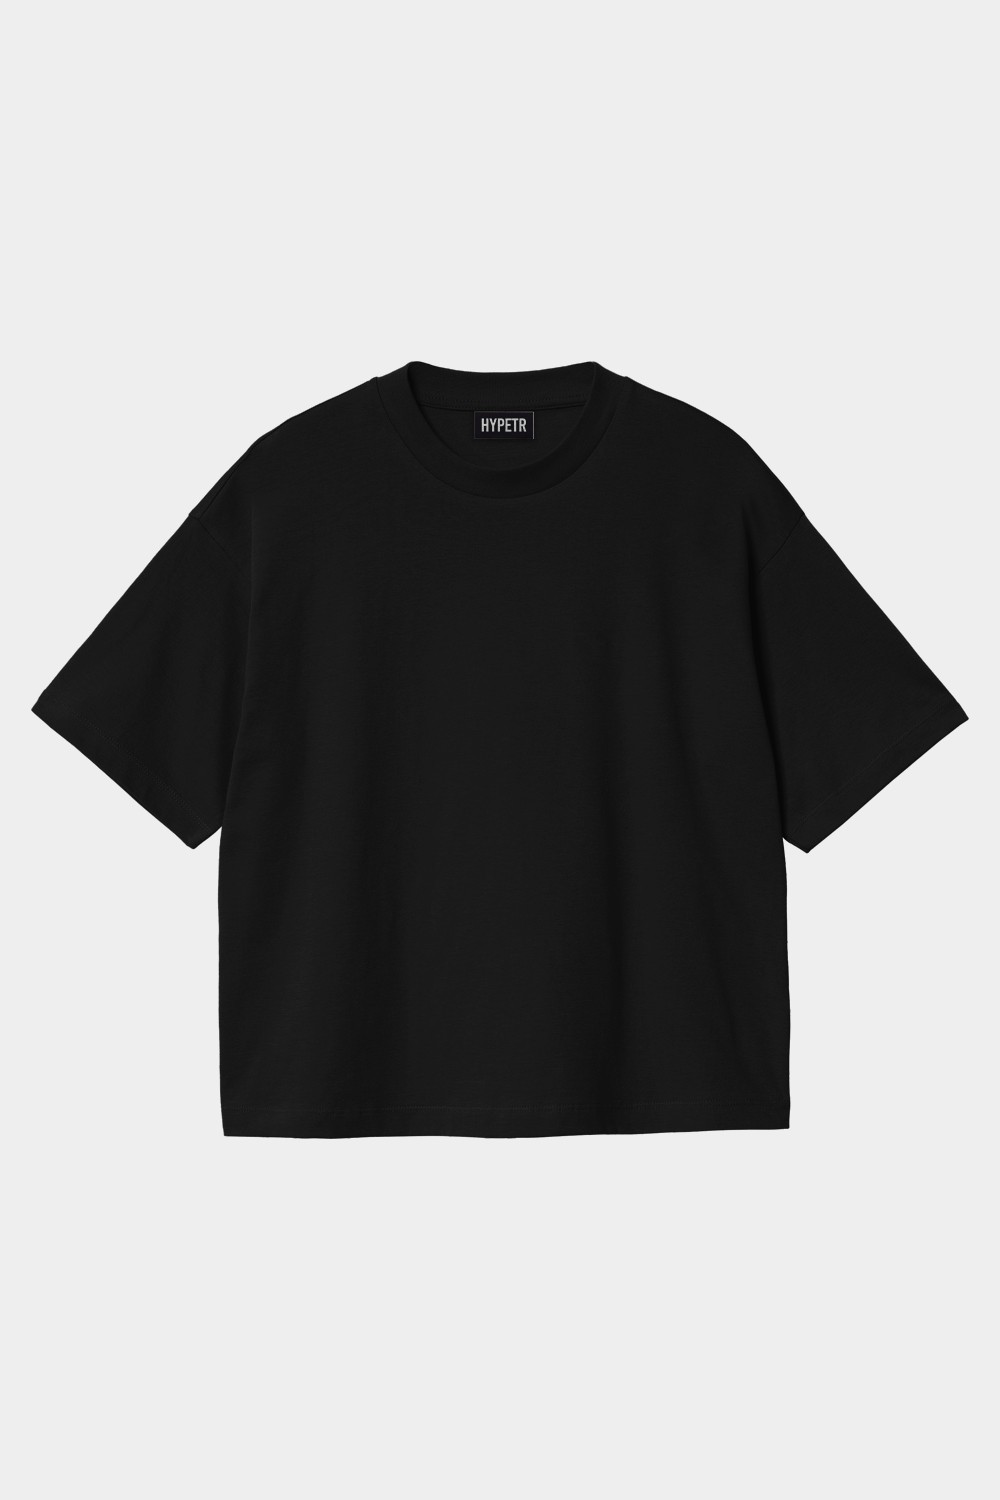 Oversized Basic T Shirt (HYPE-10)